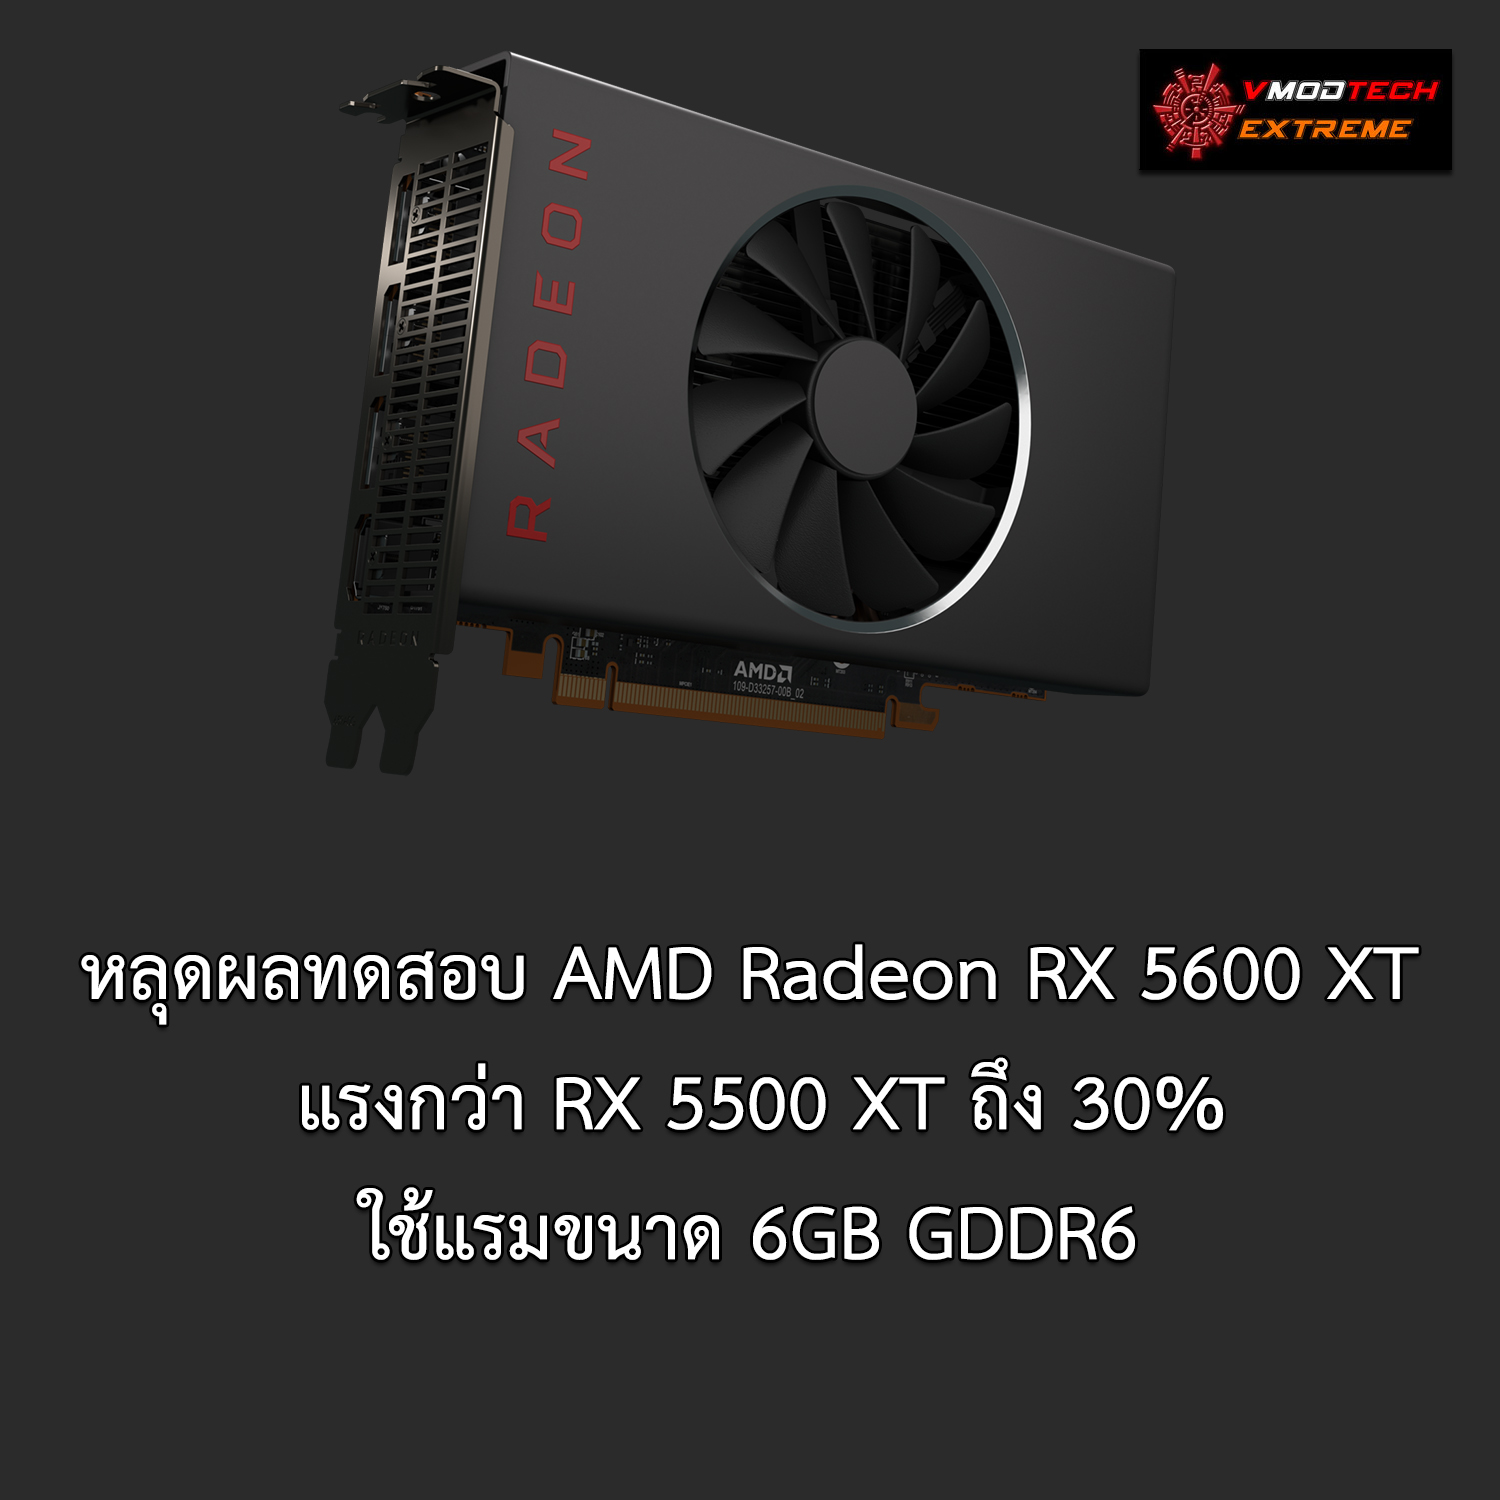 amd radeon rx 5600 xt หลุดผลทดสอบ AMD Radeon RX 5600 XT อย่างไม่เป็นทางการแรงแซง GTX 1660Ti ในโปรแกรม 3DMark กันเลยทีเดียว